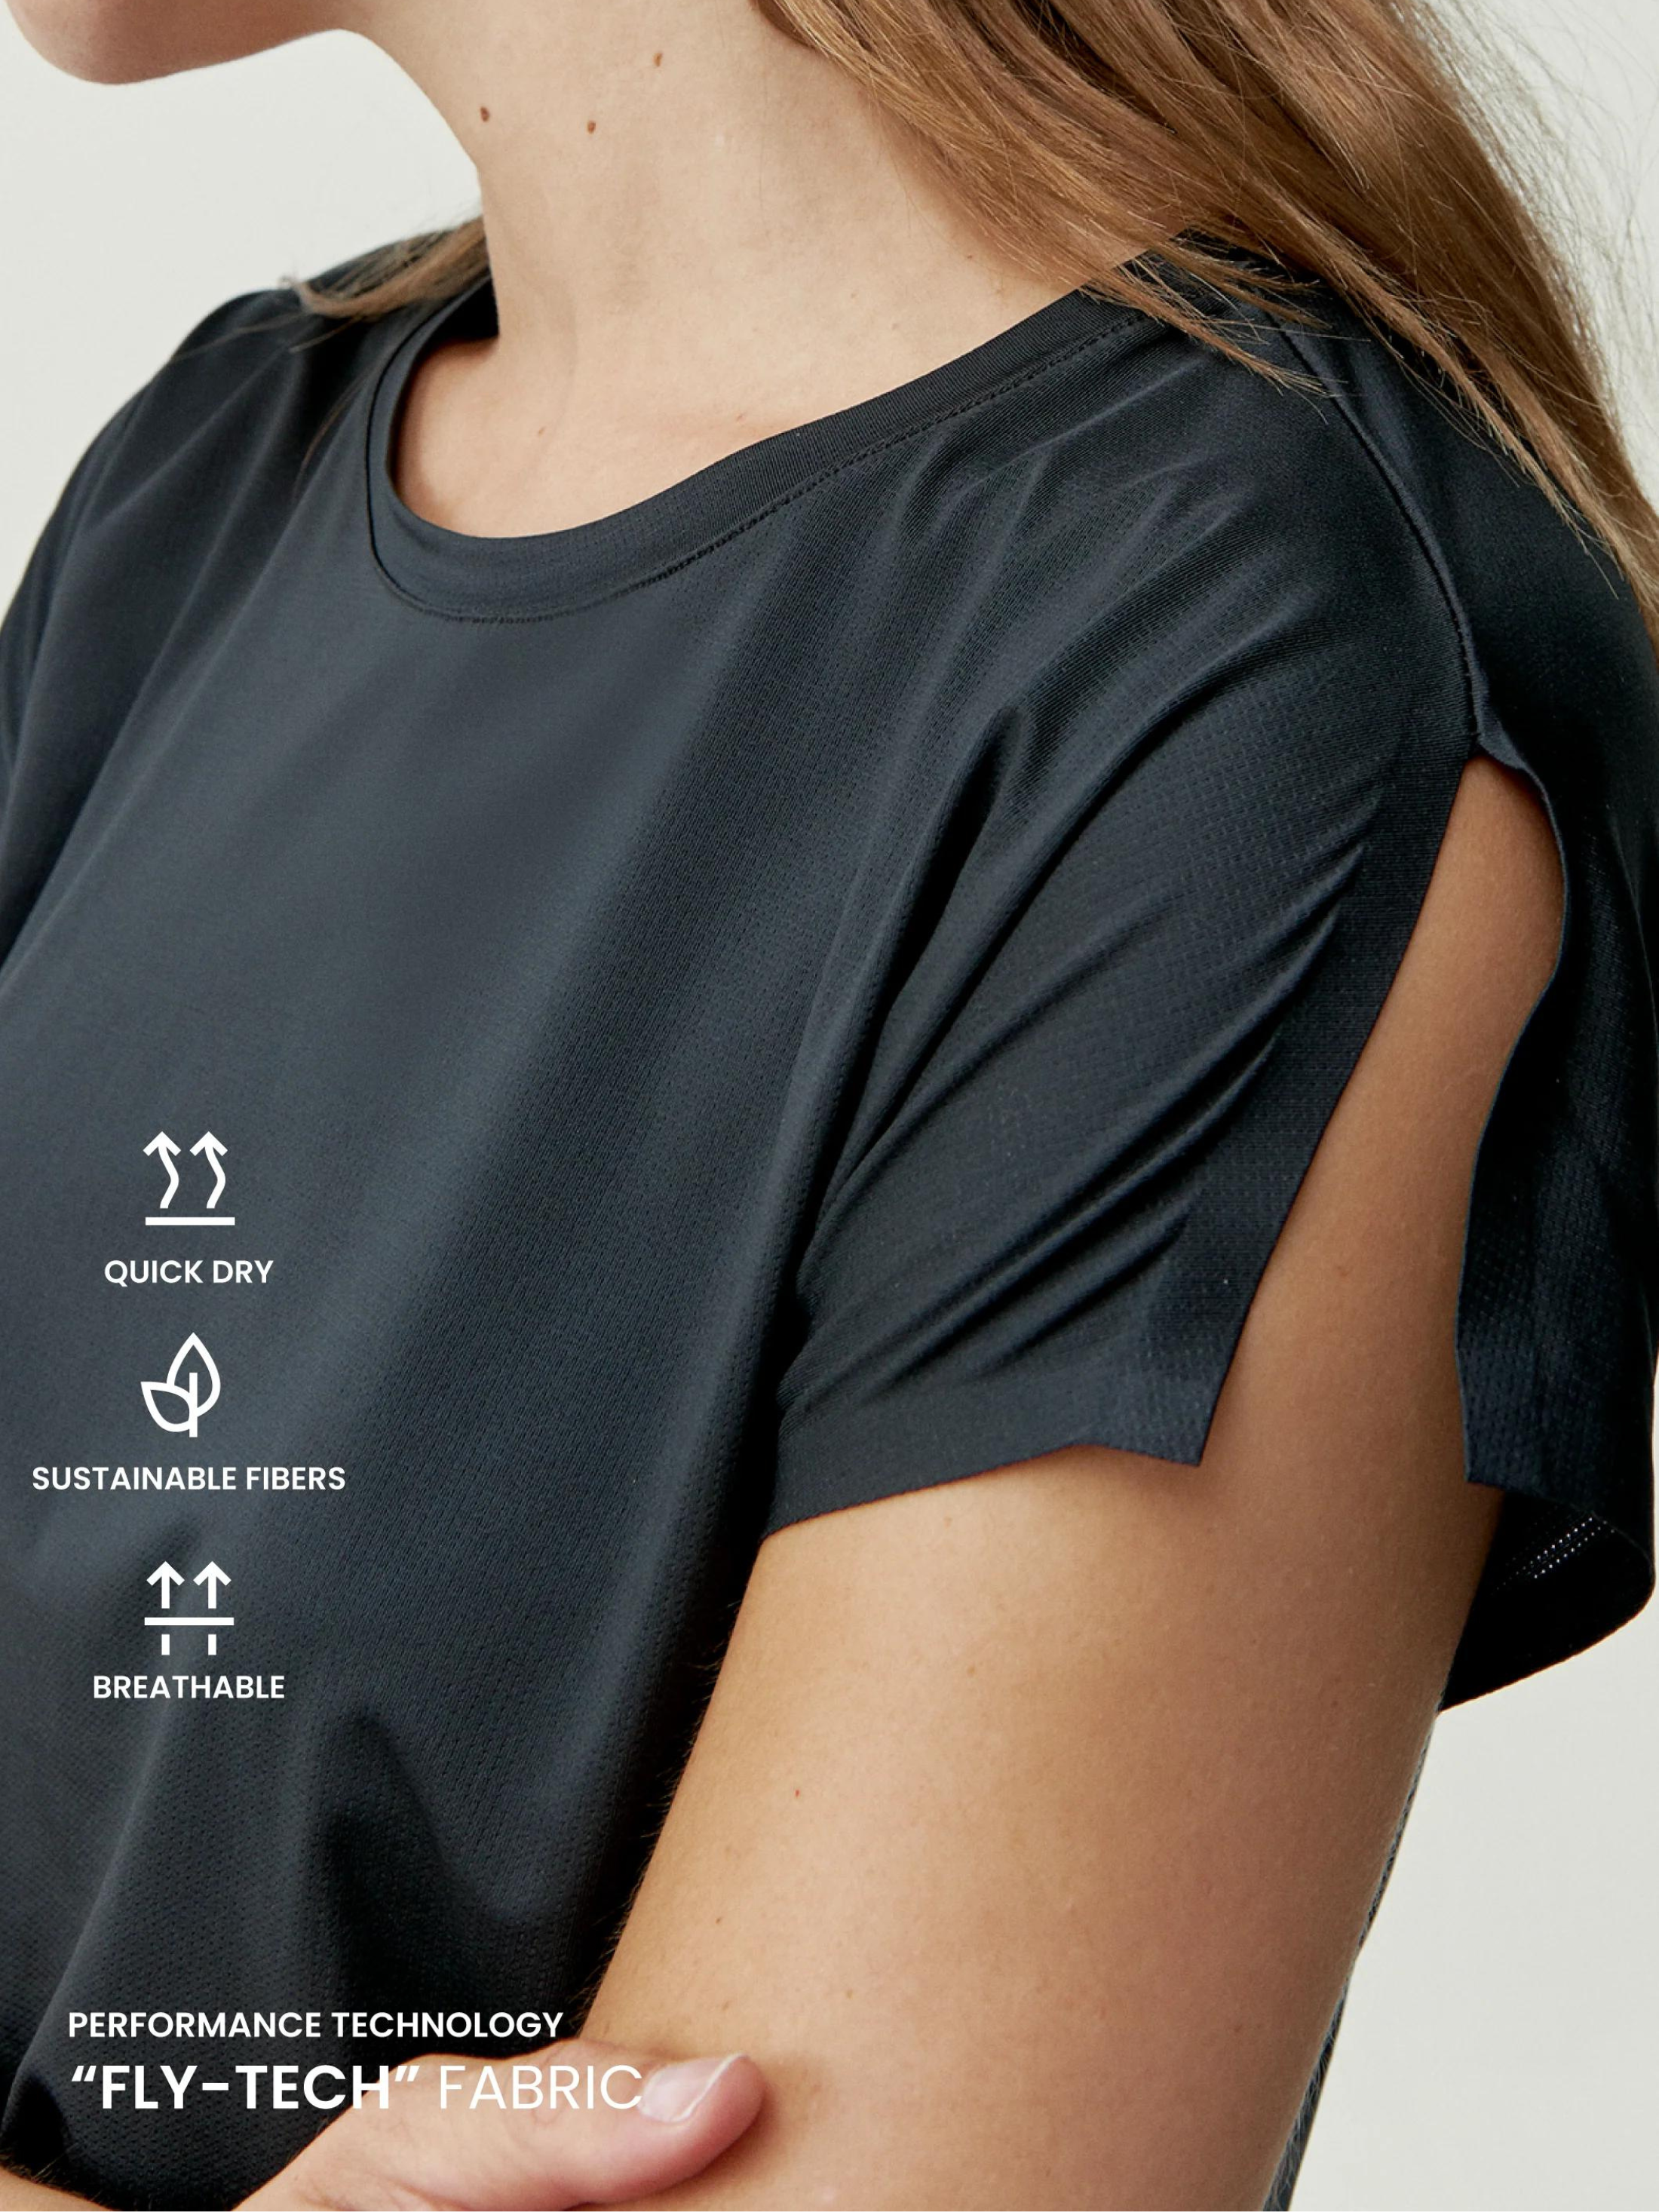 Born Living Yoga Sports T-Shirt - Black